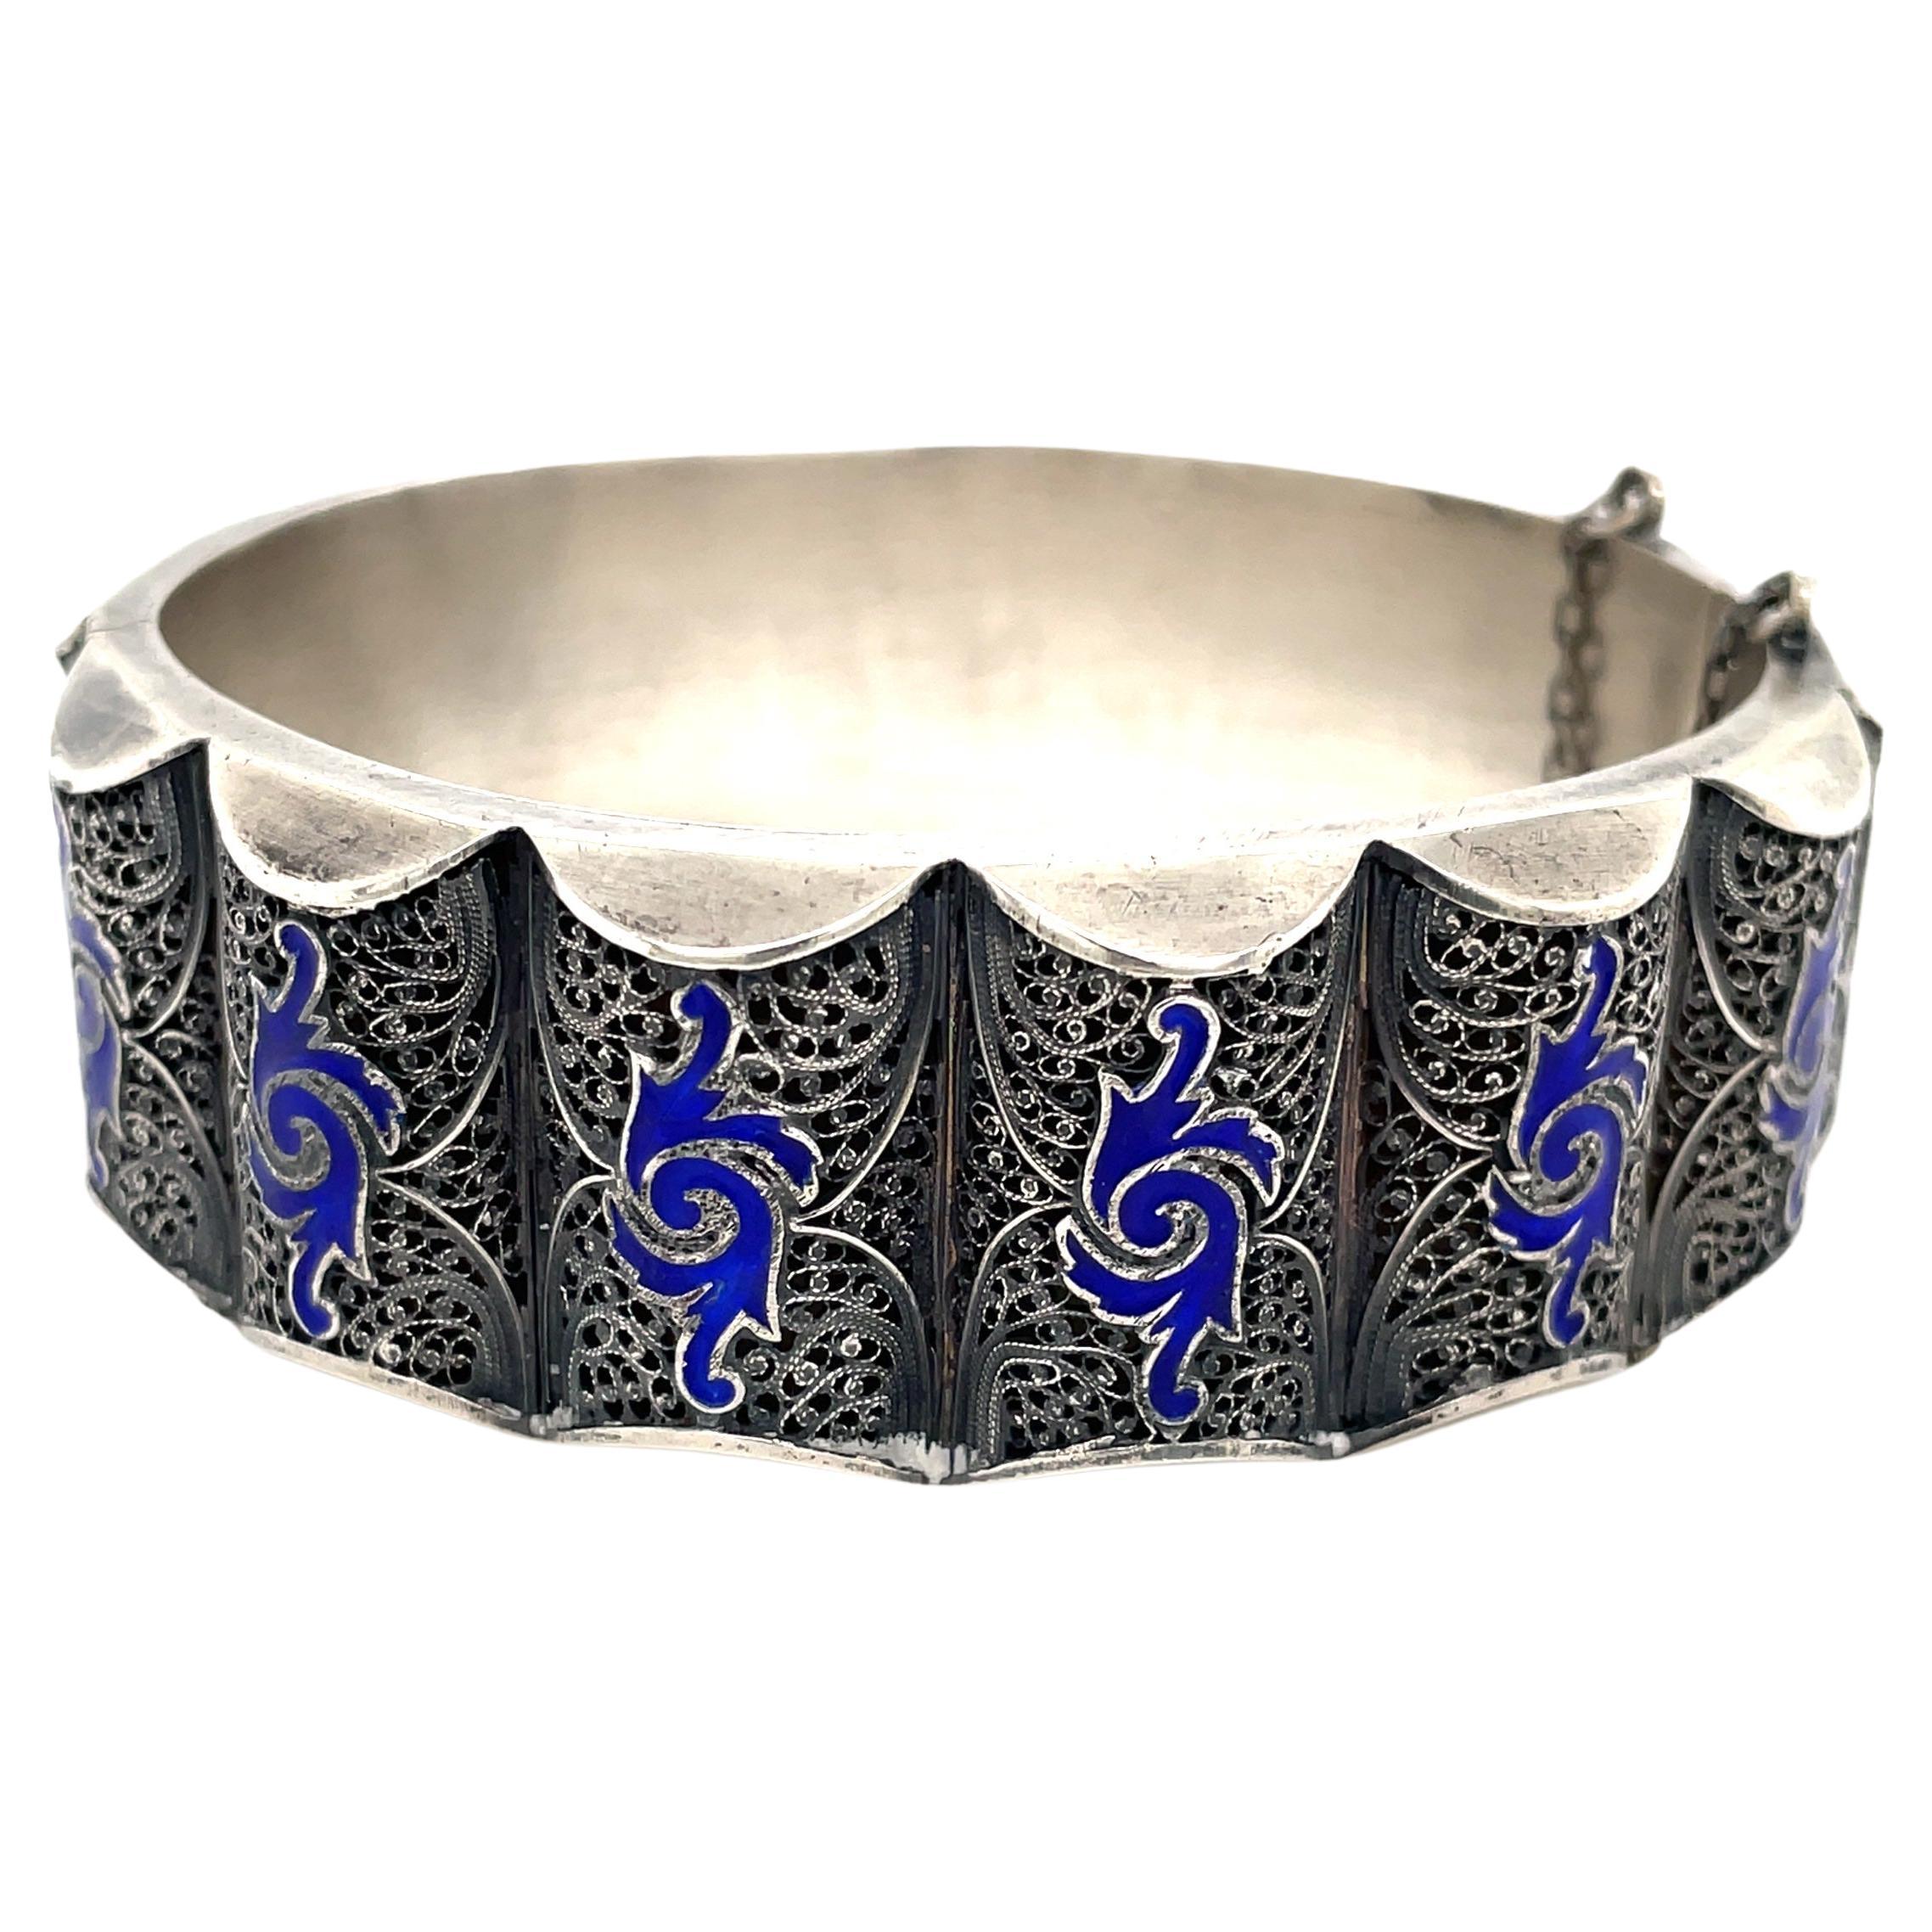 Russian Silver Bracelet - 4 For Sale on 1stDibs | russian bracelet